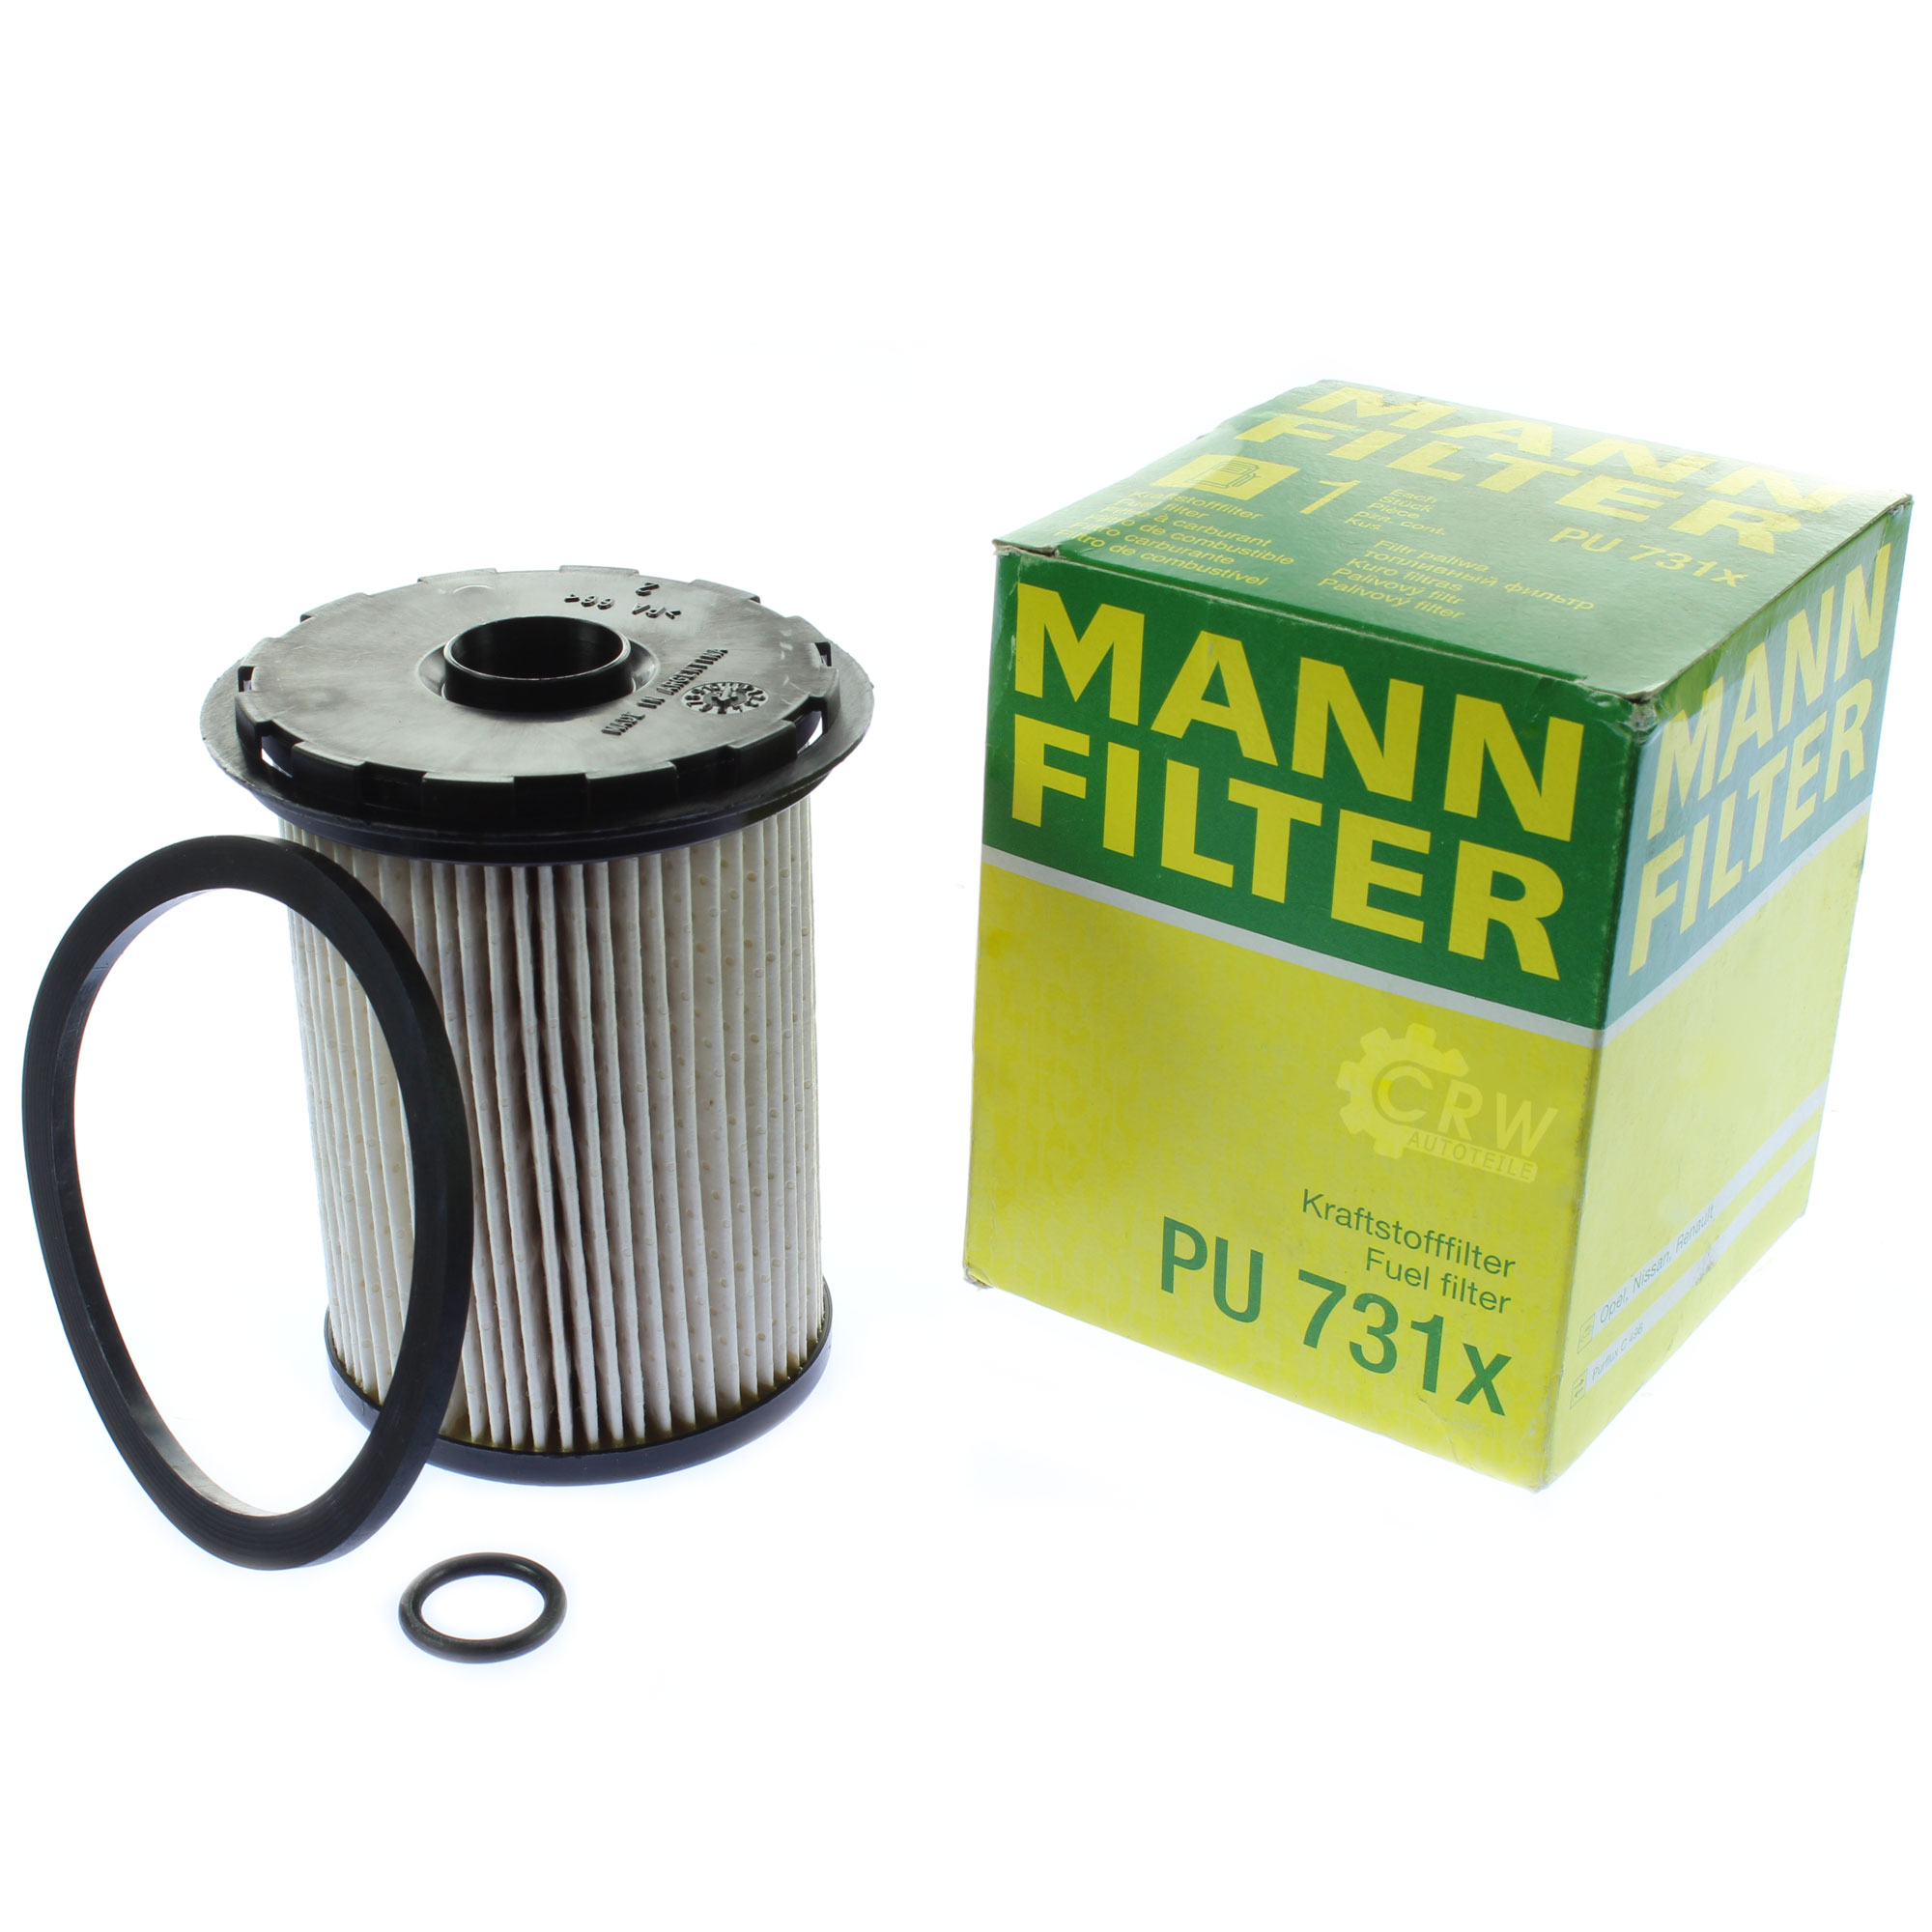 MANN-FILTER Kraftstofffilter PU 731 x Fuel Filter